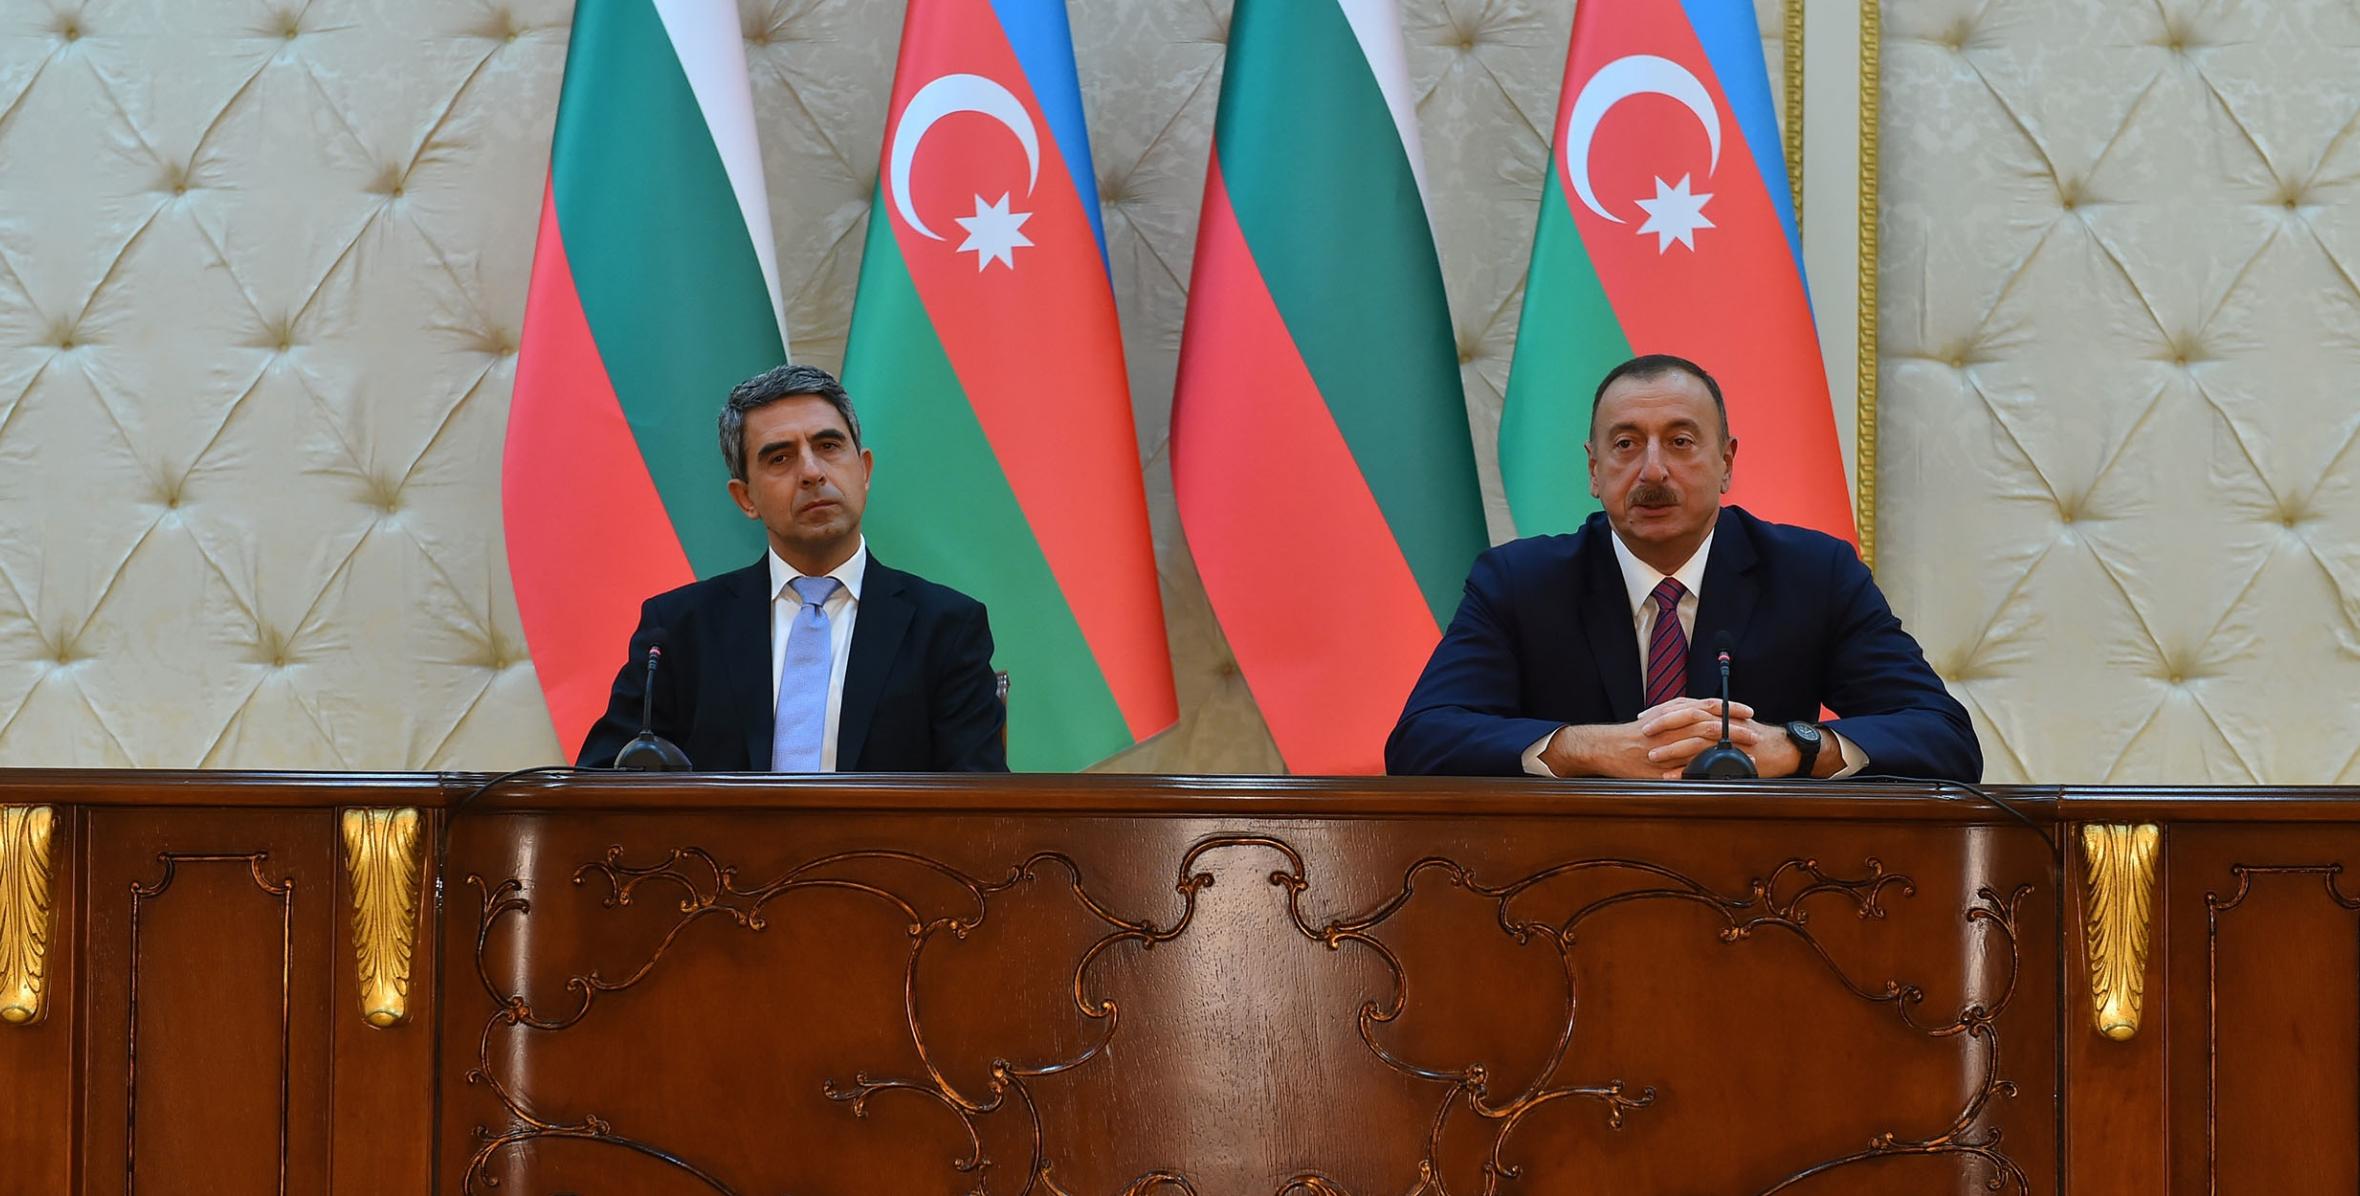 Ильхам Алиев и Президент Республики Болгария Росен Плевнелиев выступили с заявлениями для печати